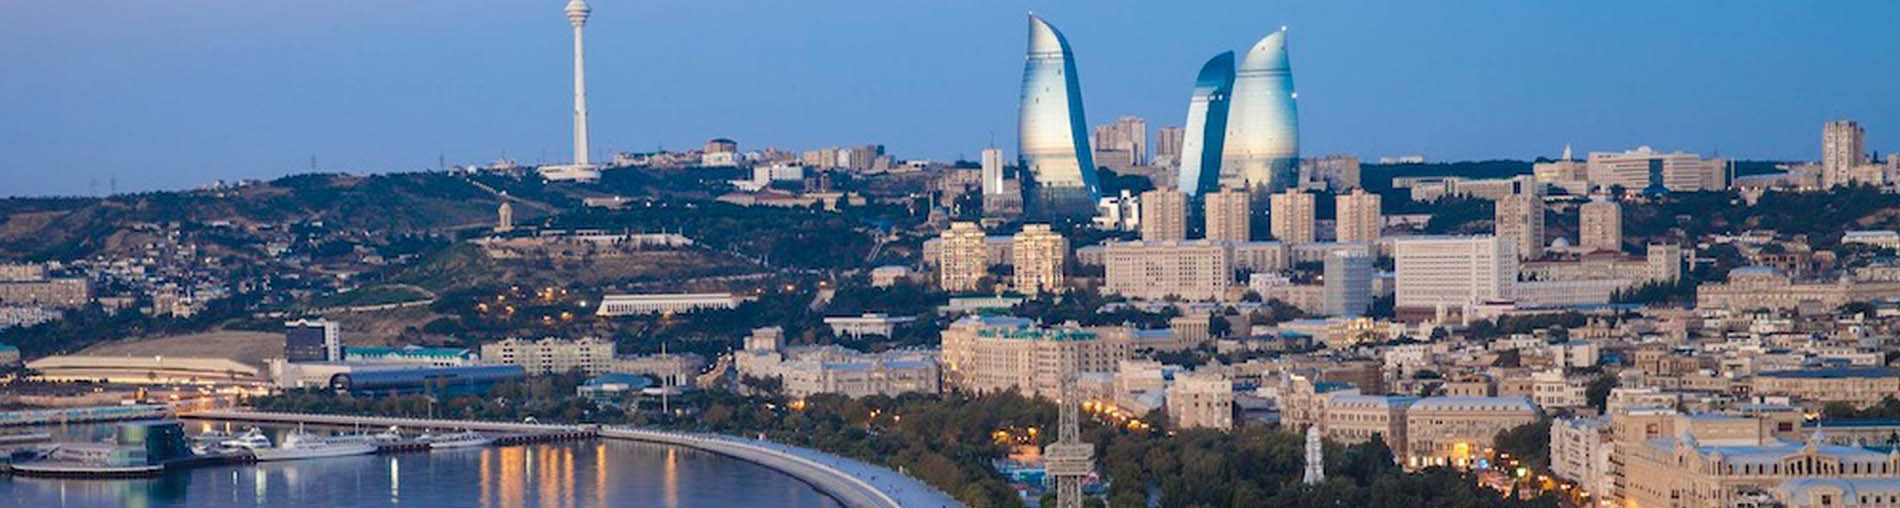 Shopping Spots In Azerbaijan